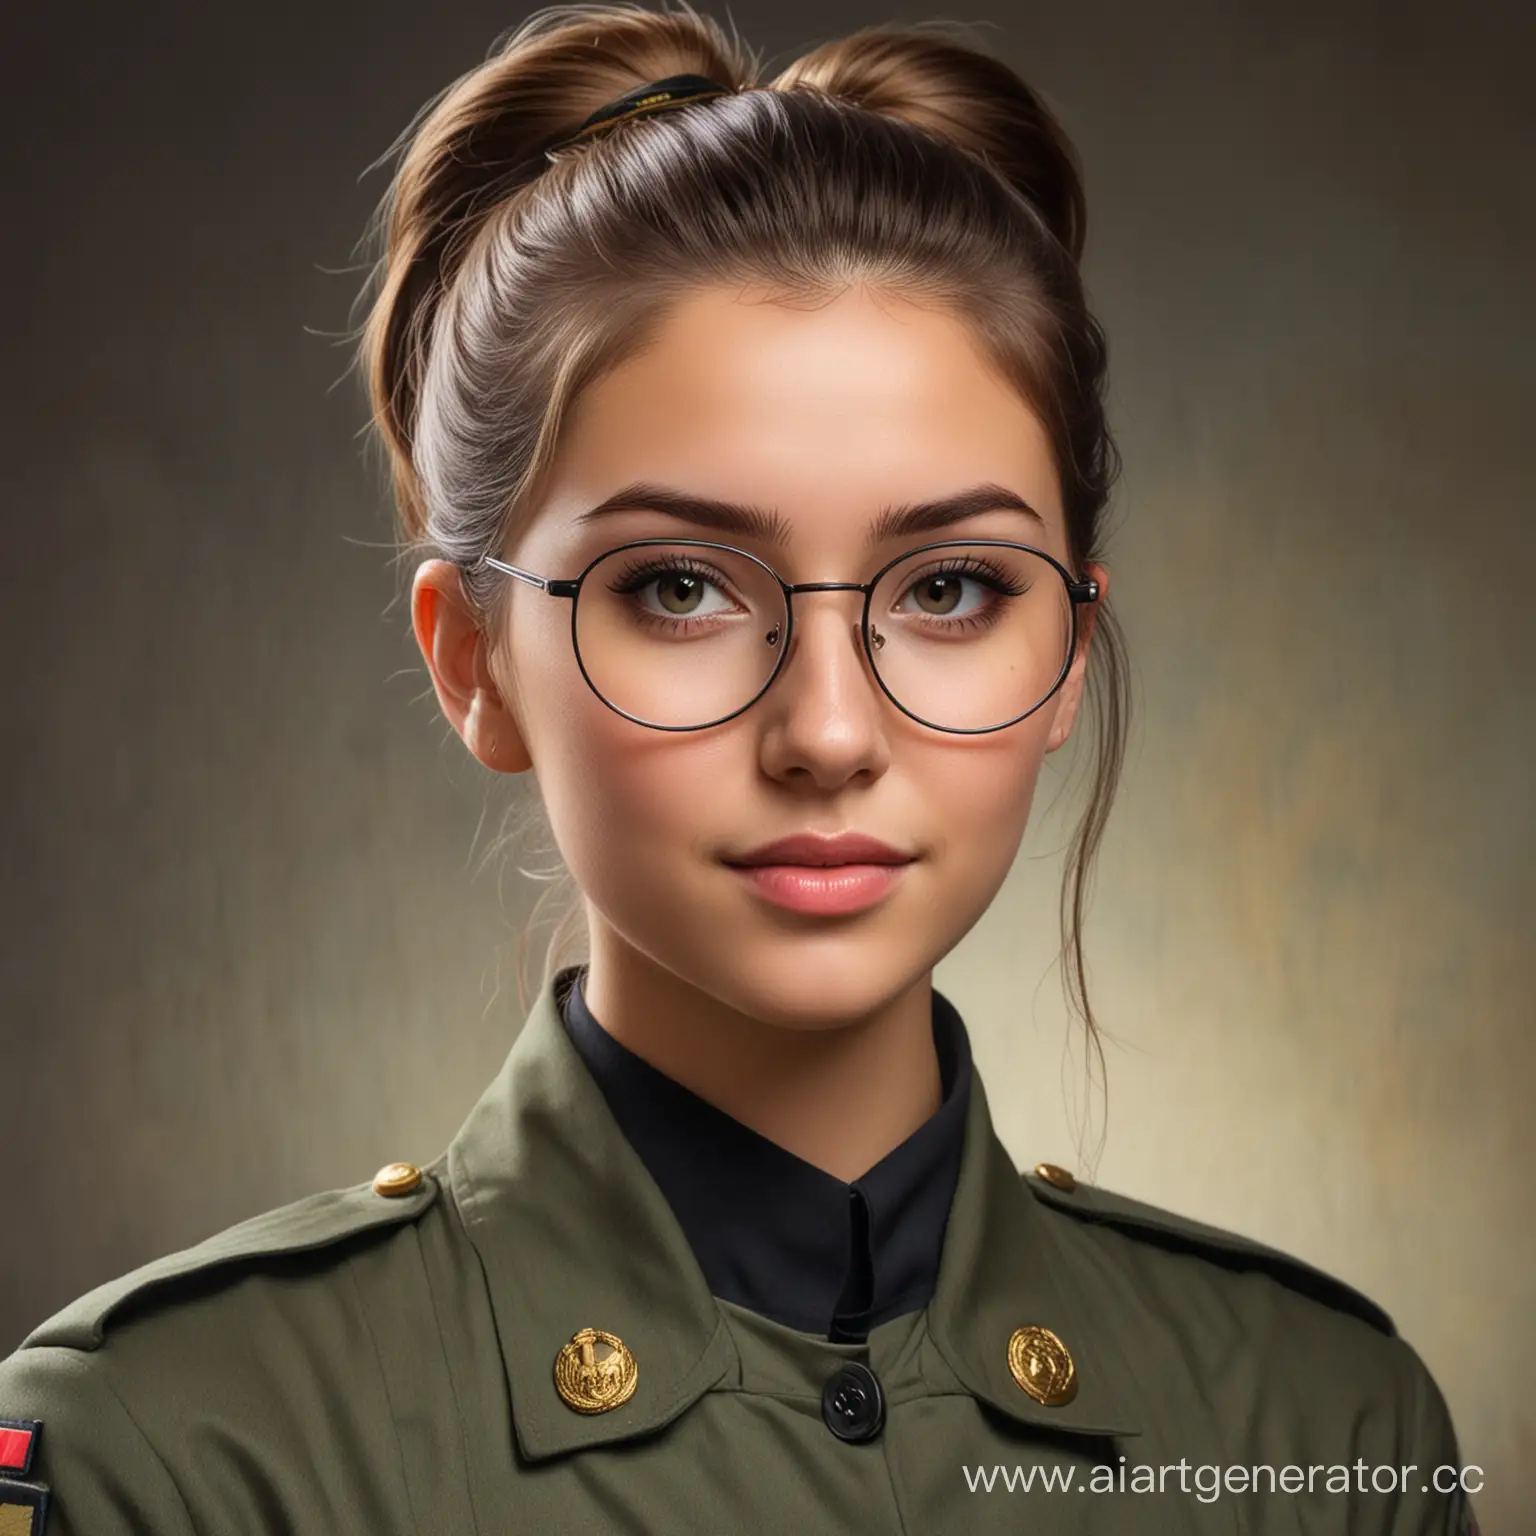 Девушка 25 лет в военной форме, в круглых очках и с маленьким хвостом волос, портрет